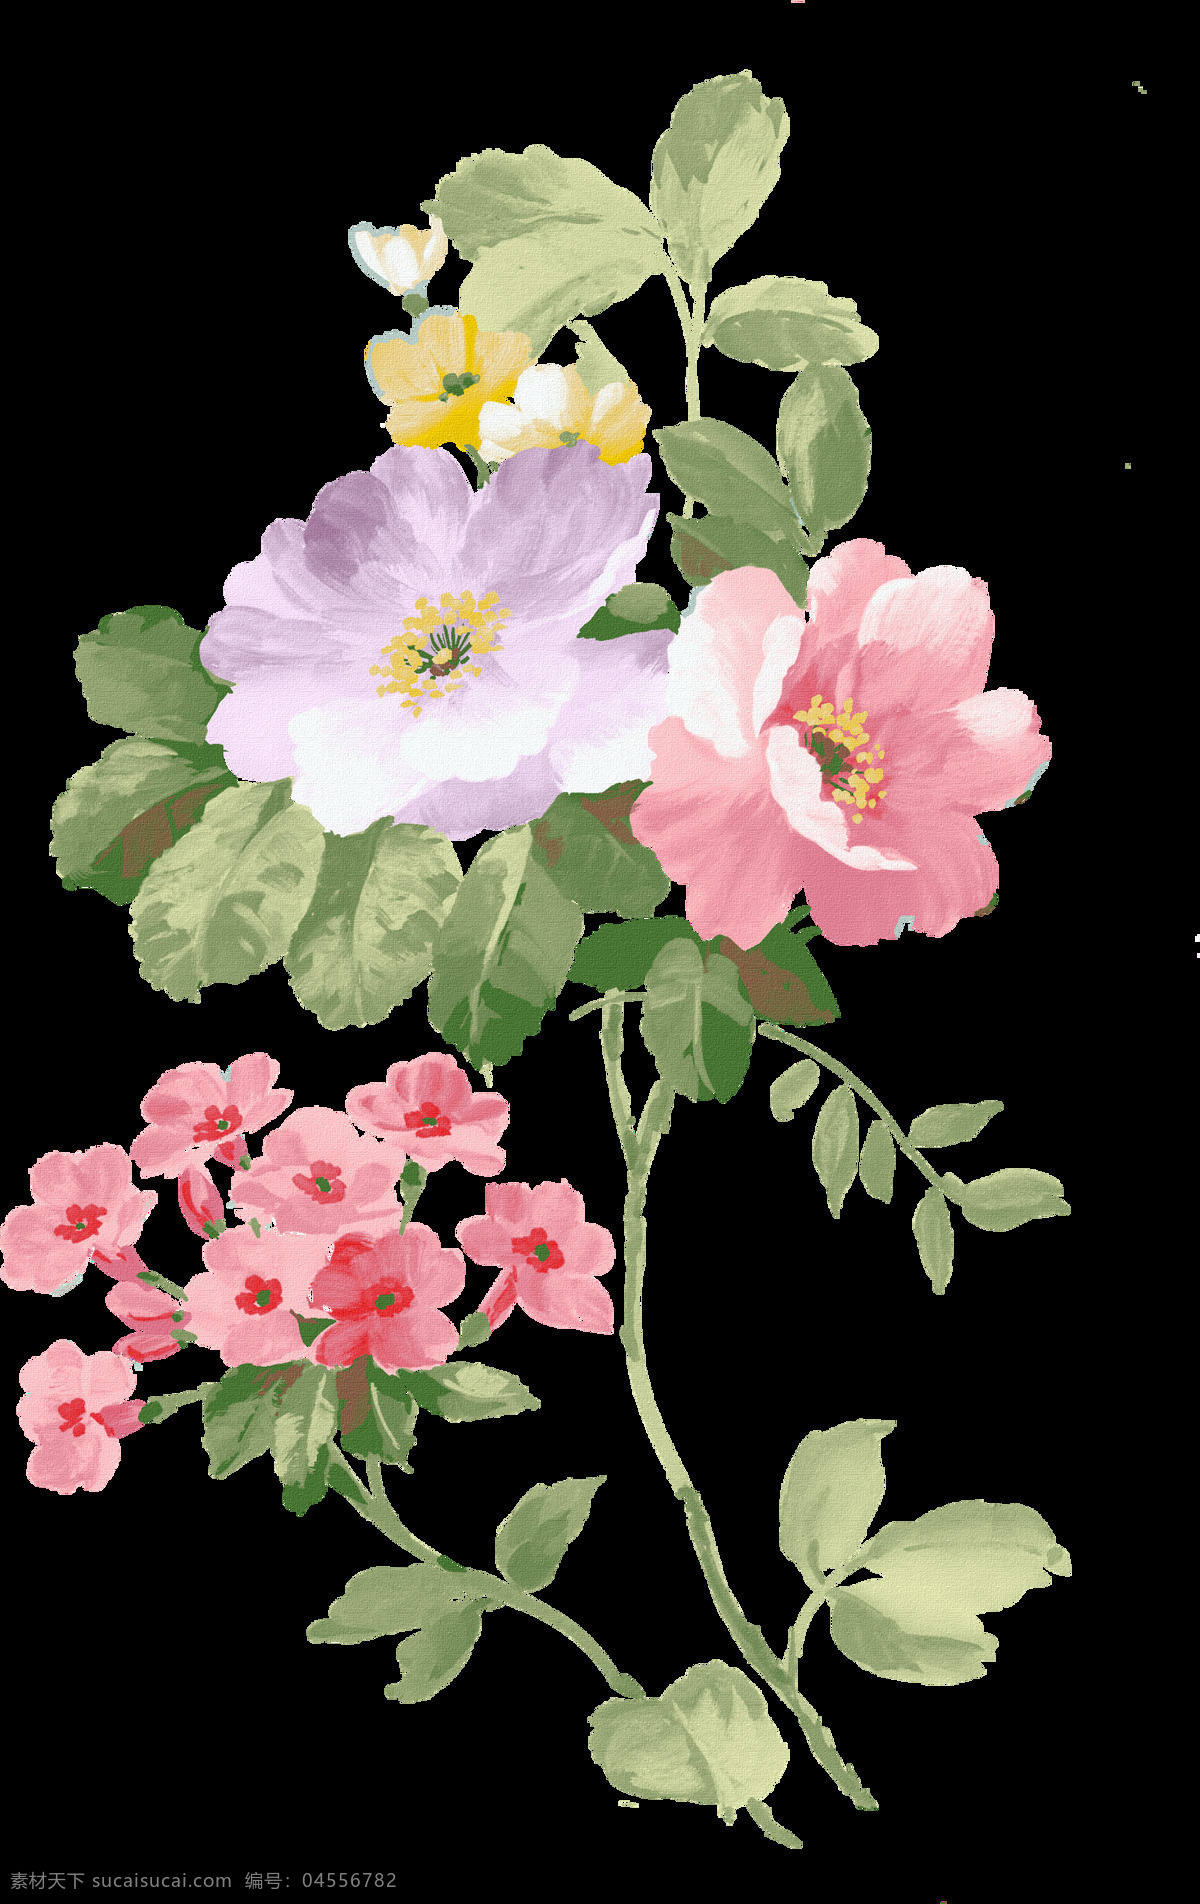 复古花朵 花朵素材 花卉 绘画花朵 绘画书法 静物花卉 绿叶 手绘花朵 手绘 设计素材 模板下载 手绘花卉 文化艺术